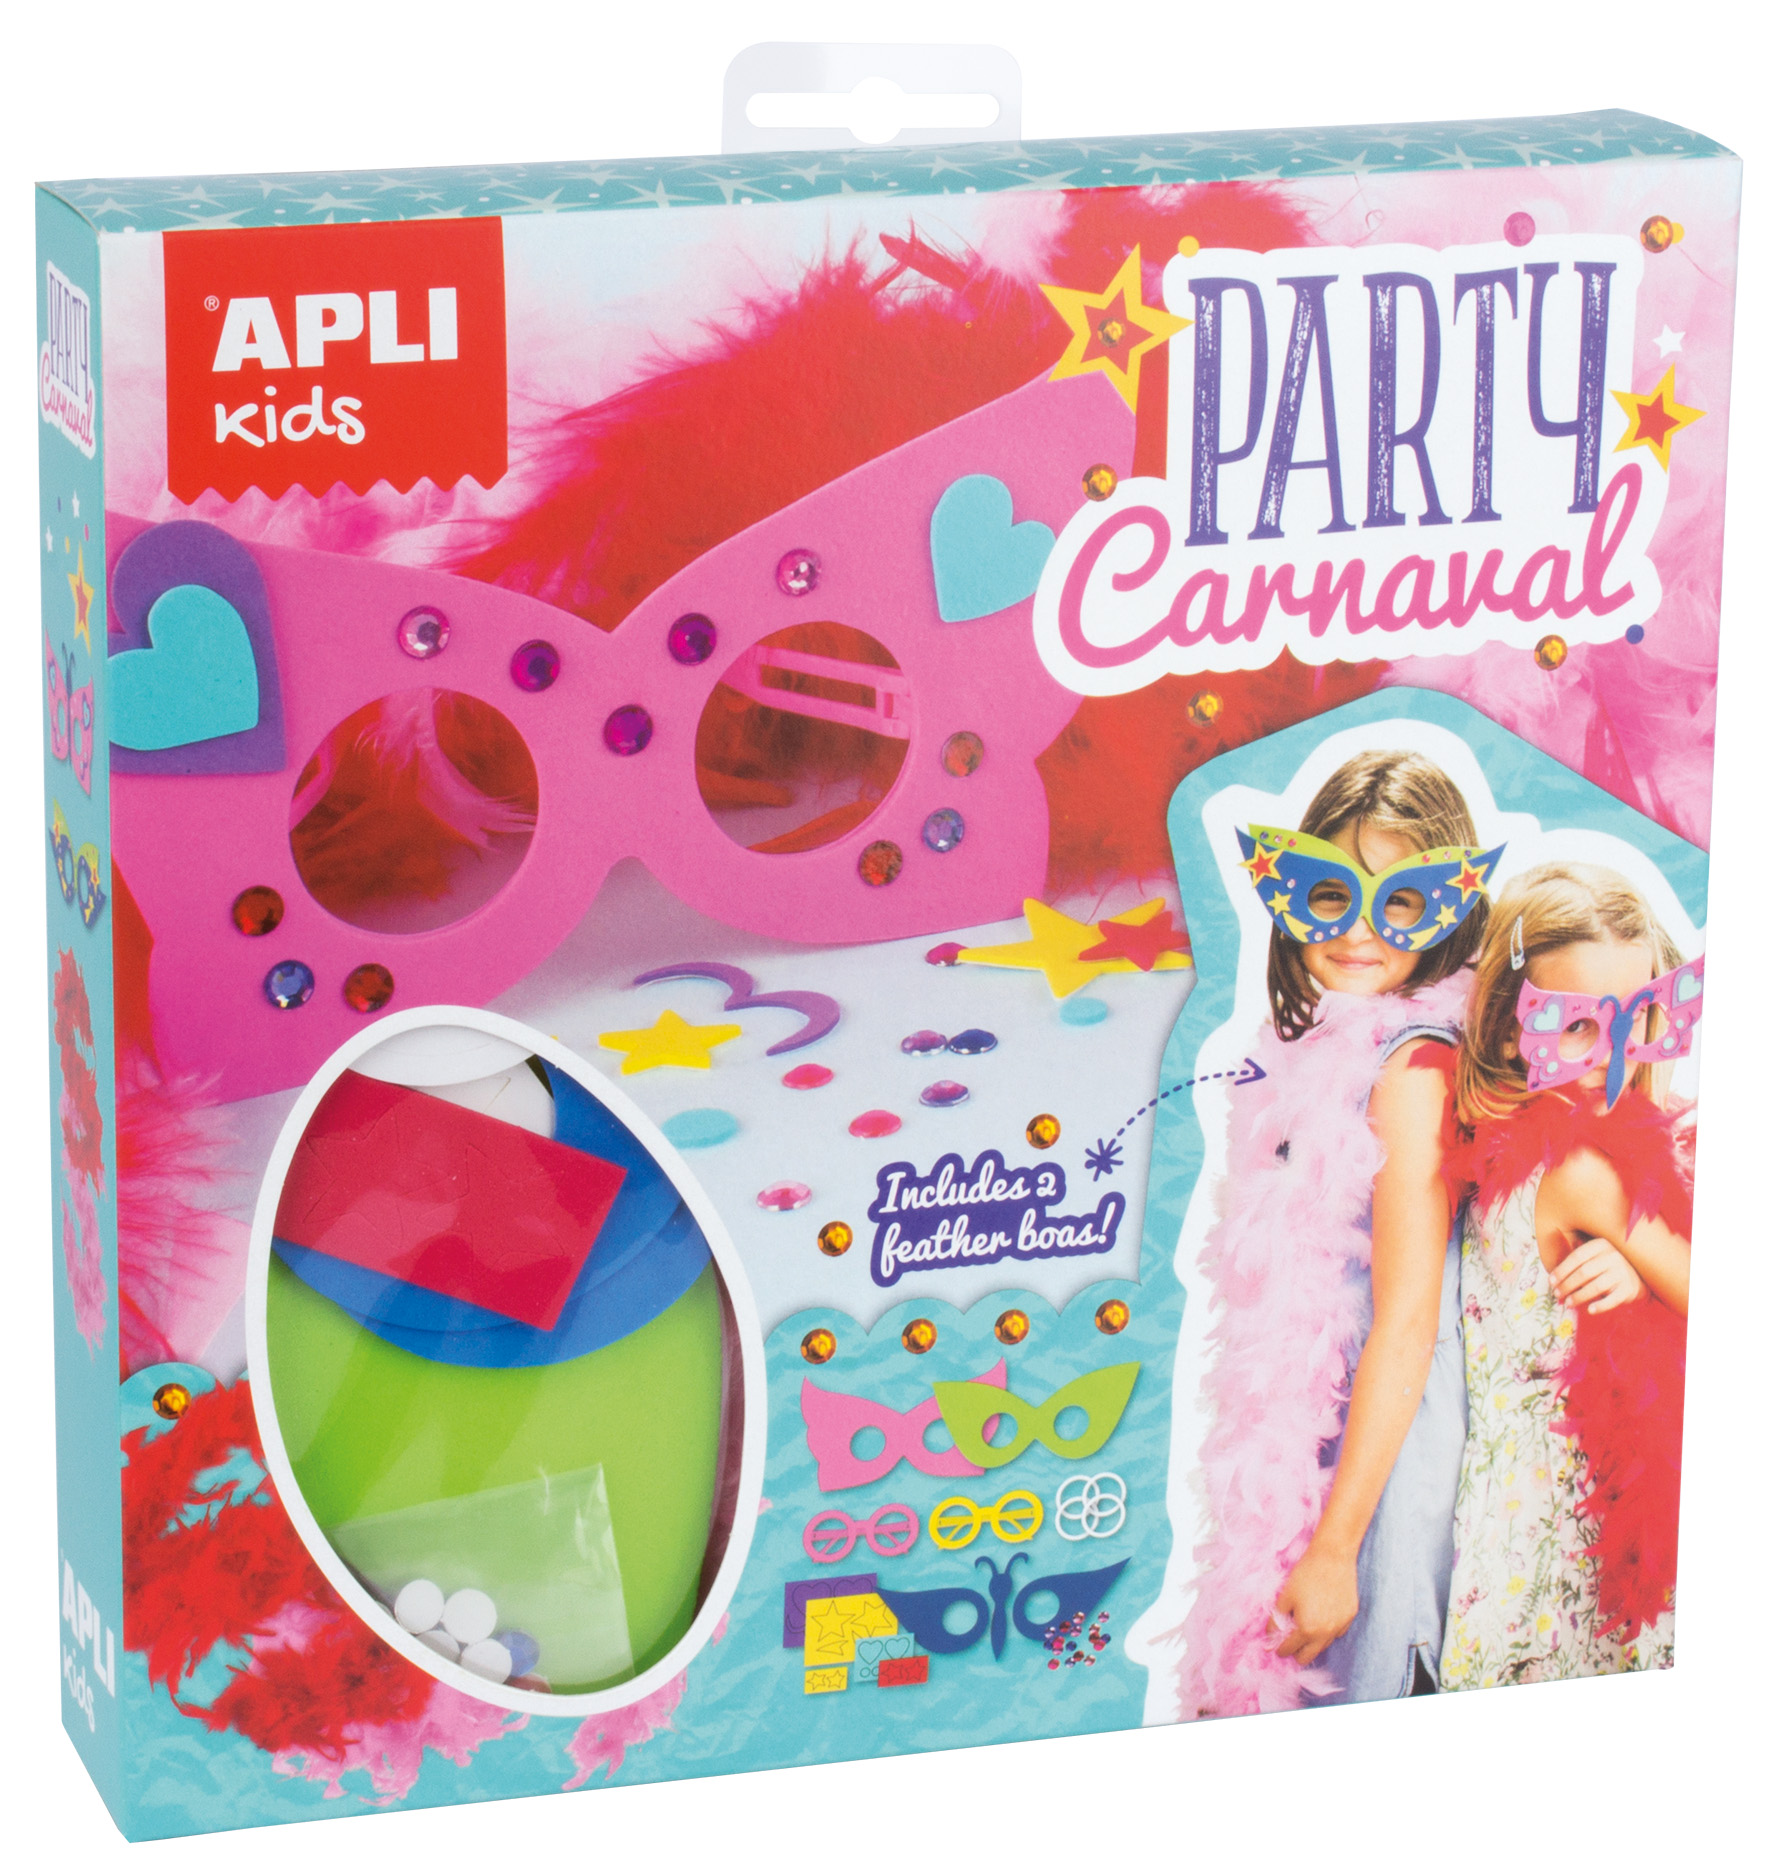 Apli Kit Fiesta Carnaval - Incluye Varios Elementos para la Fiesta - Decoracion Tematica - Accesorio